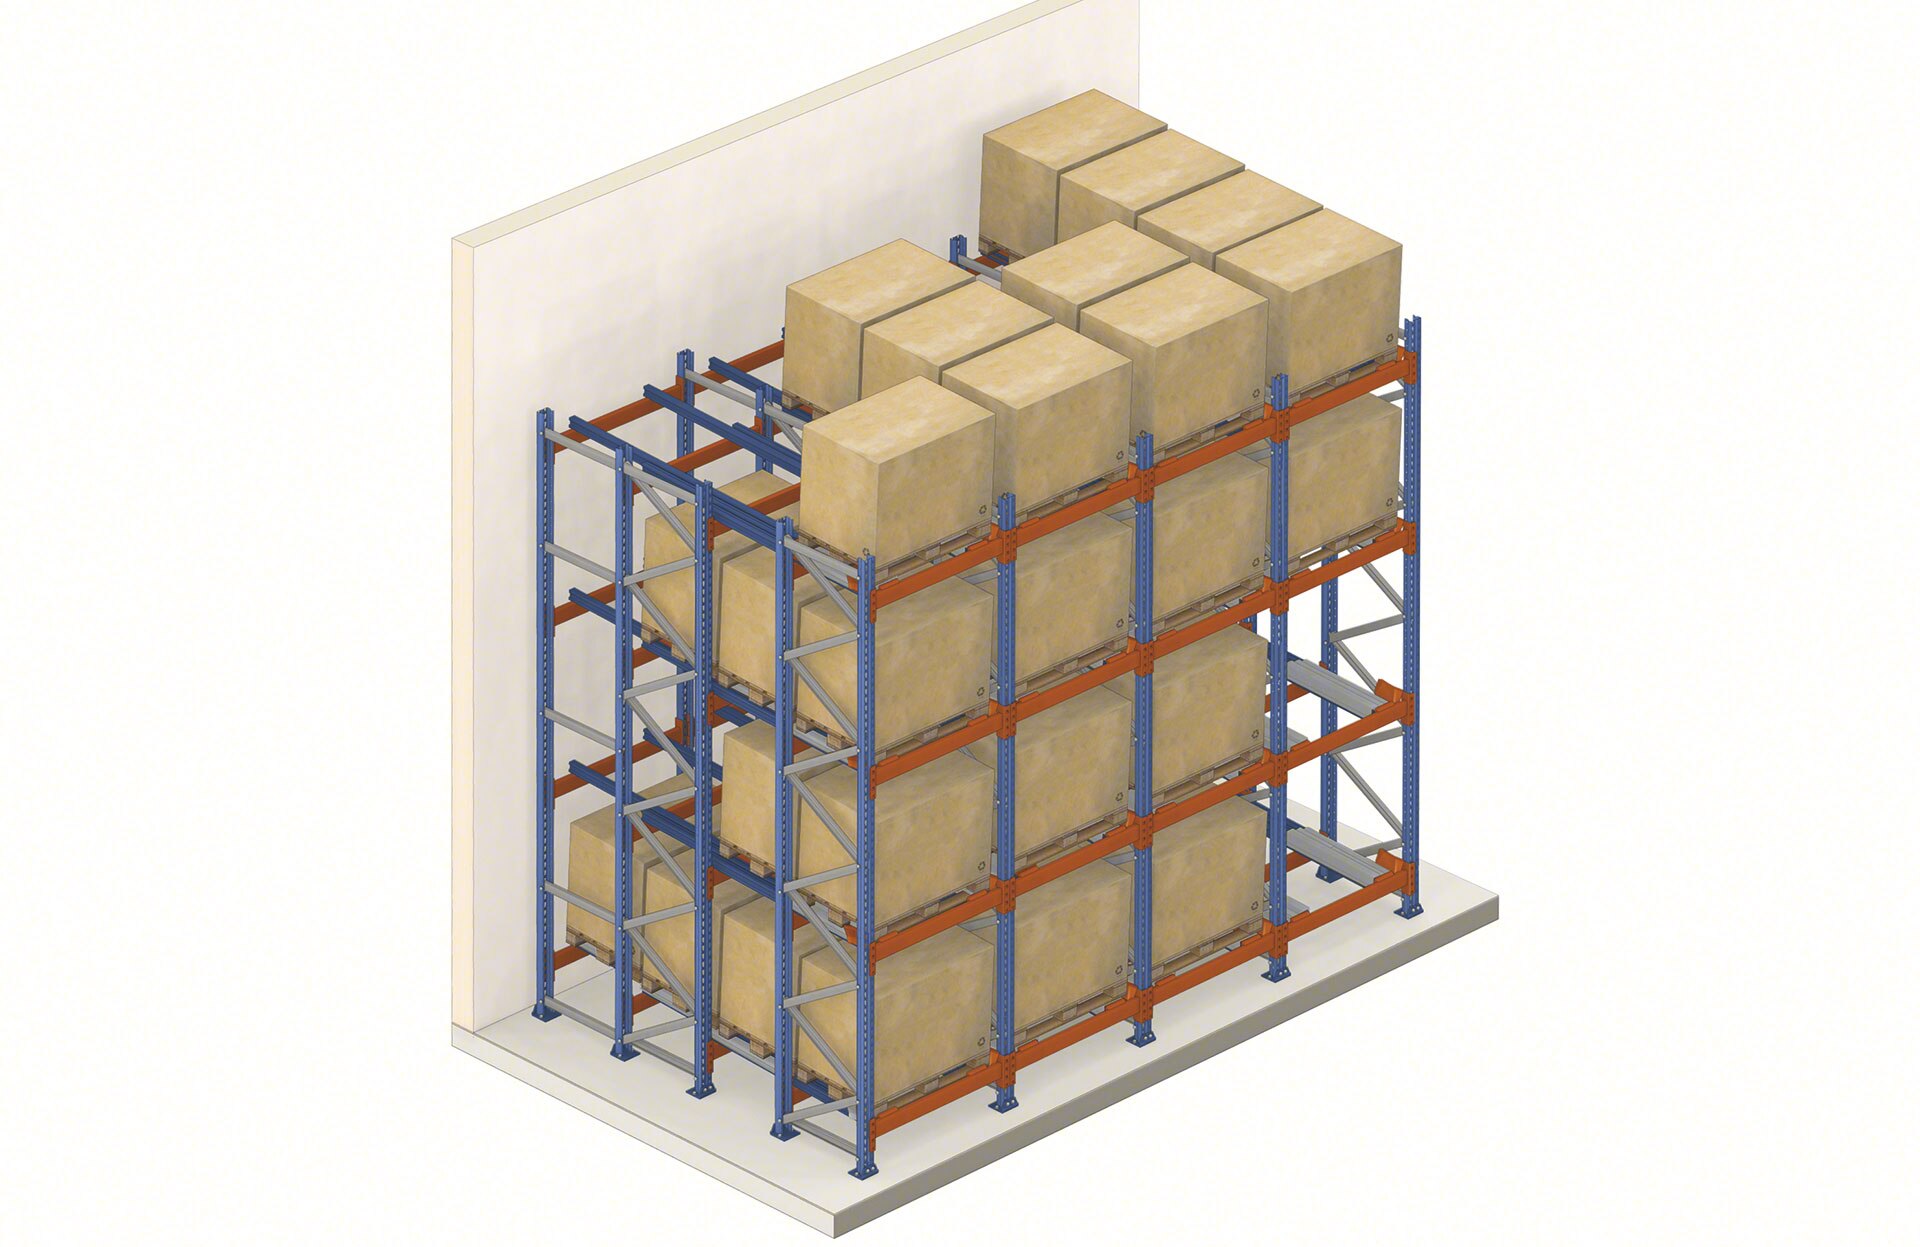 Pushback stellingen zijn een compact opslagsysteem met toegang tot goederen vanuit één gangpad